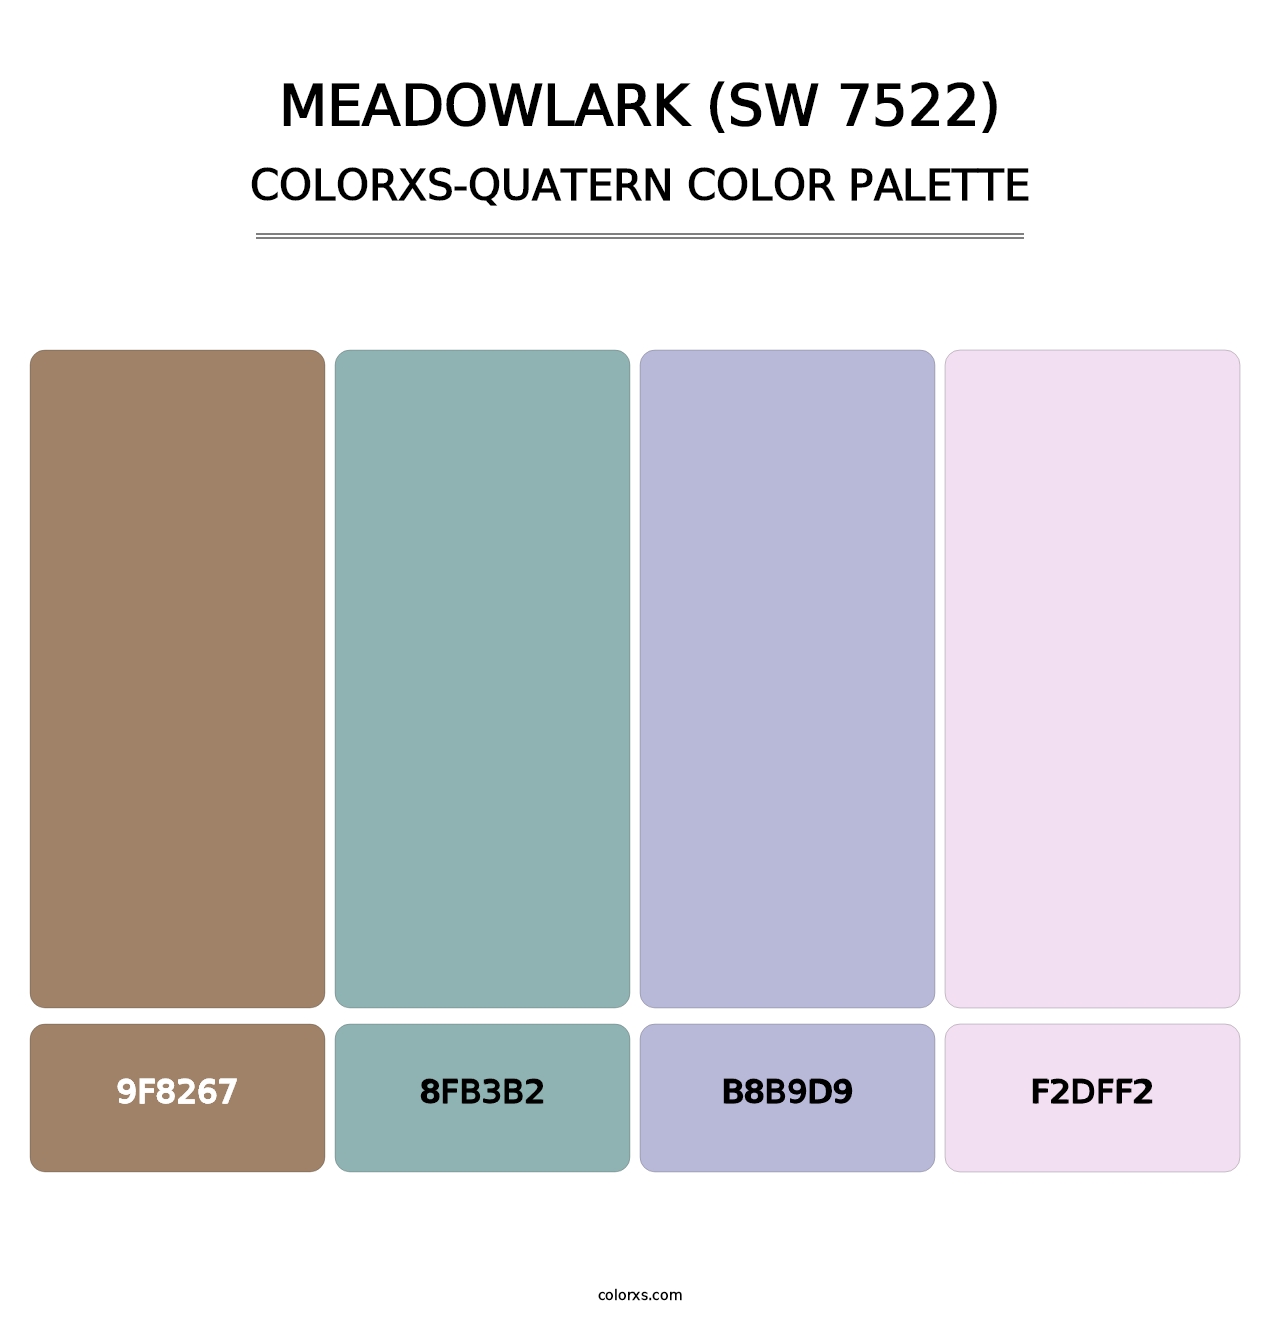 Meadowlark (SW 7522) - Colorxs Quatern Palette